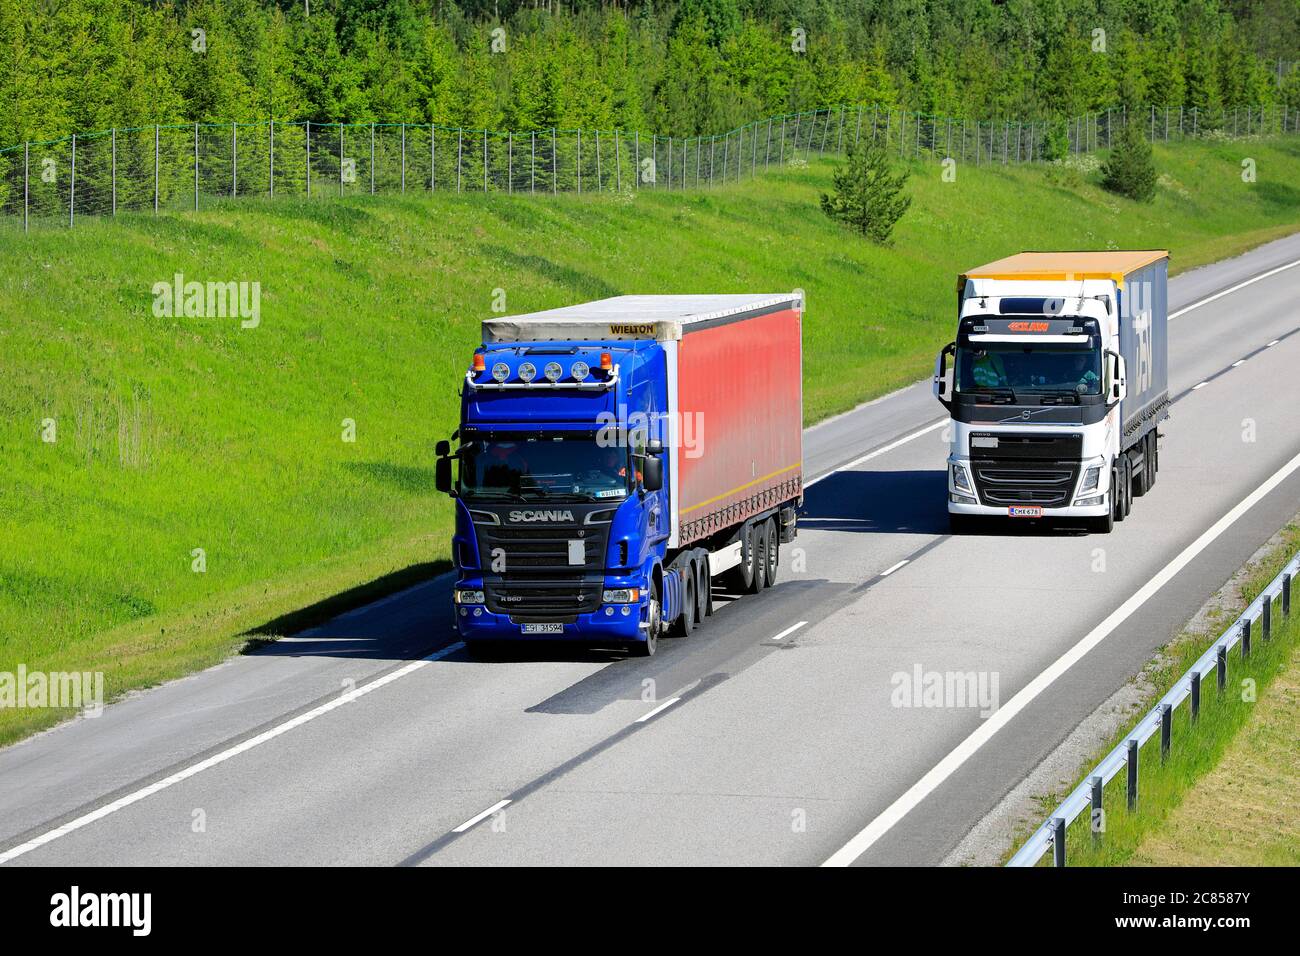 Il semirimorchio Volvo FH bianco supera il semirimorchio Scania blu con carico più pesante. Salo, Finlandia. 12 giugno 2020. Foto Stock